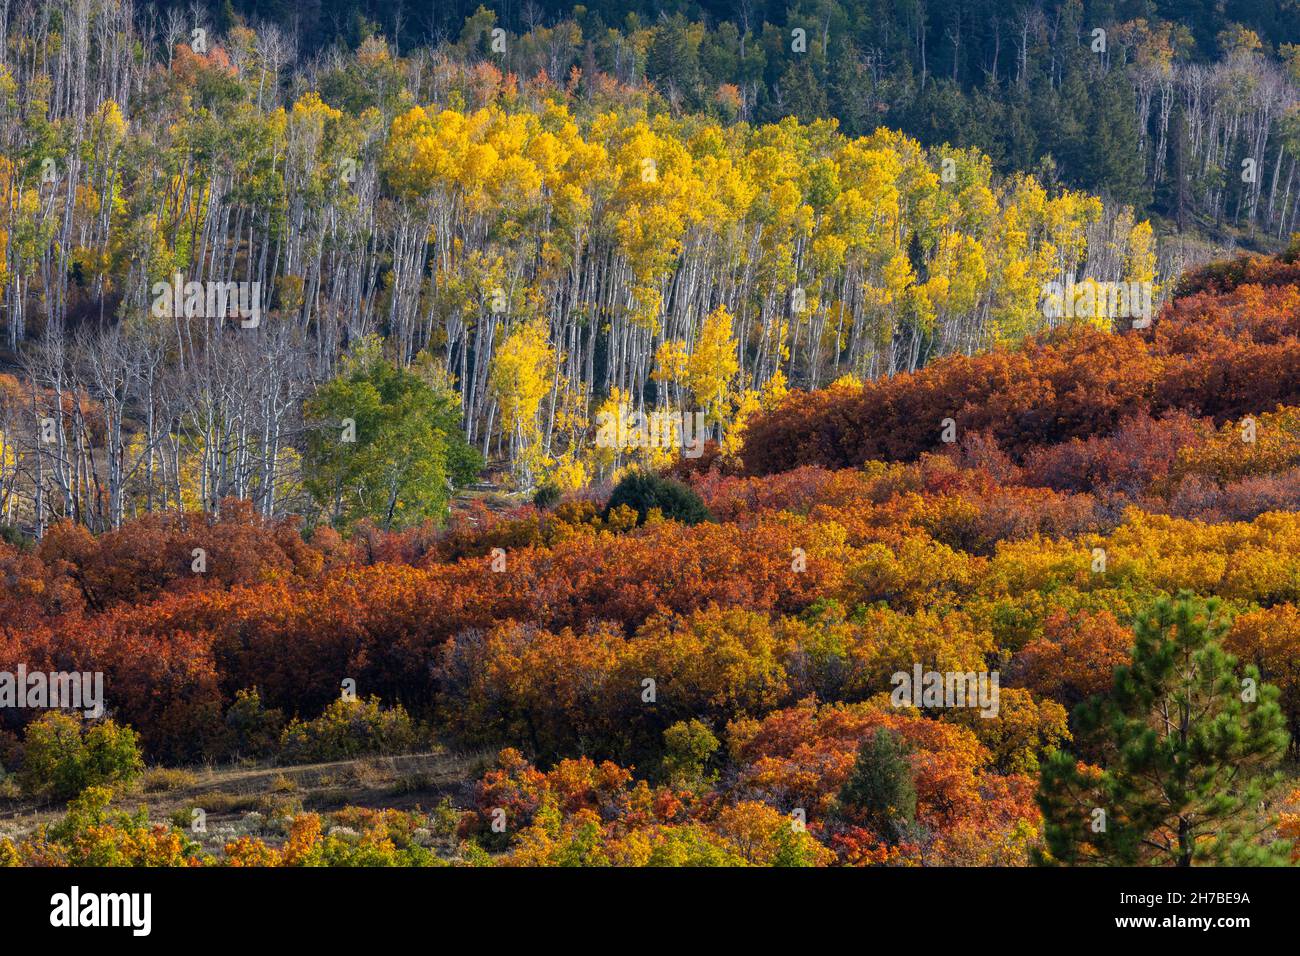 Aspen et feuillage coloré en automne, Dallas Divide, forêt nationale d'Uncompahgre, montagnes de San Juan, Colorado Banque D'Images